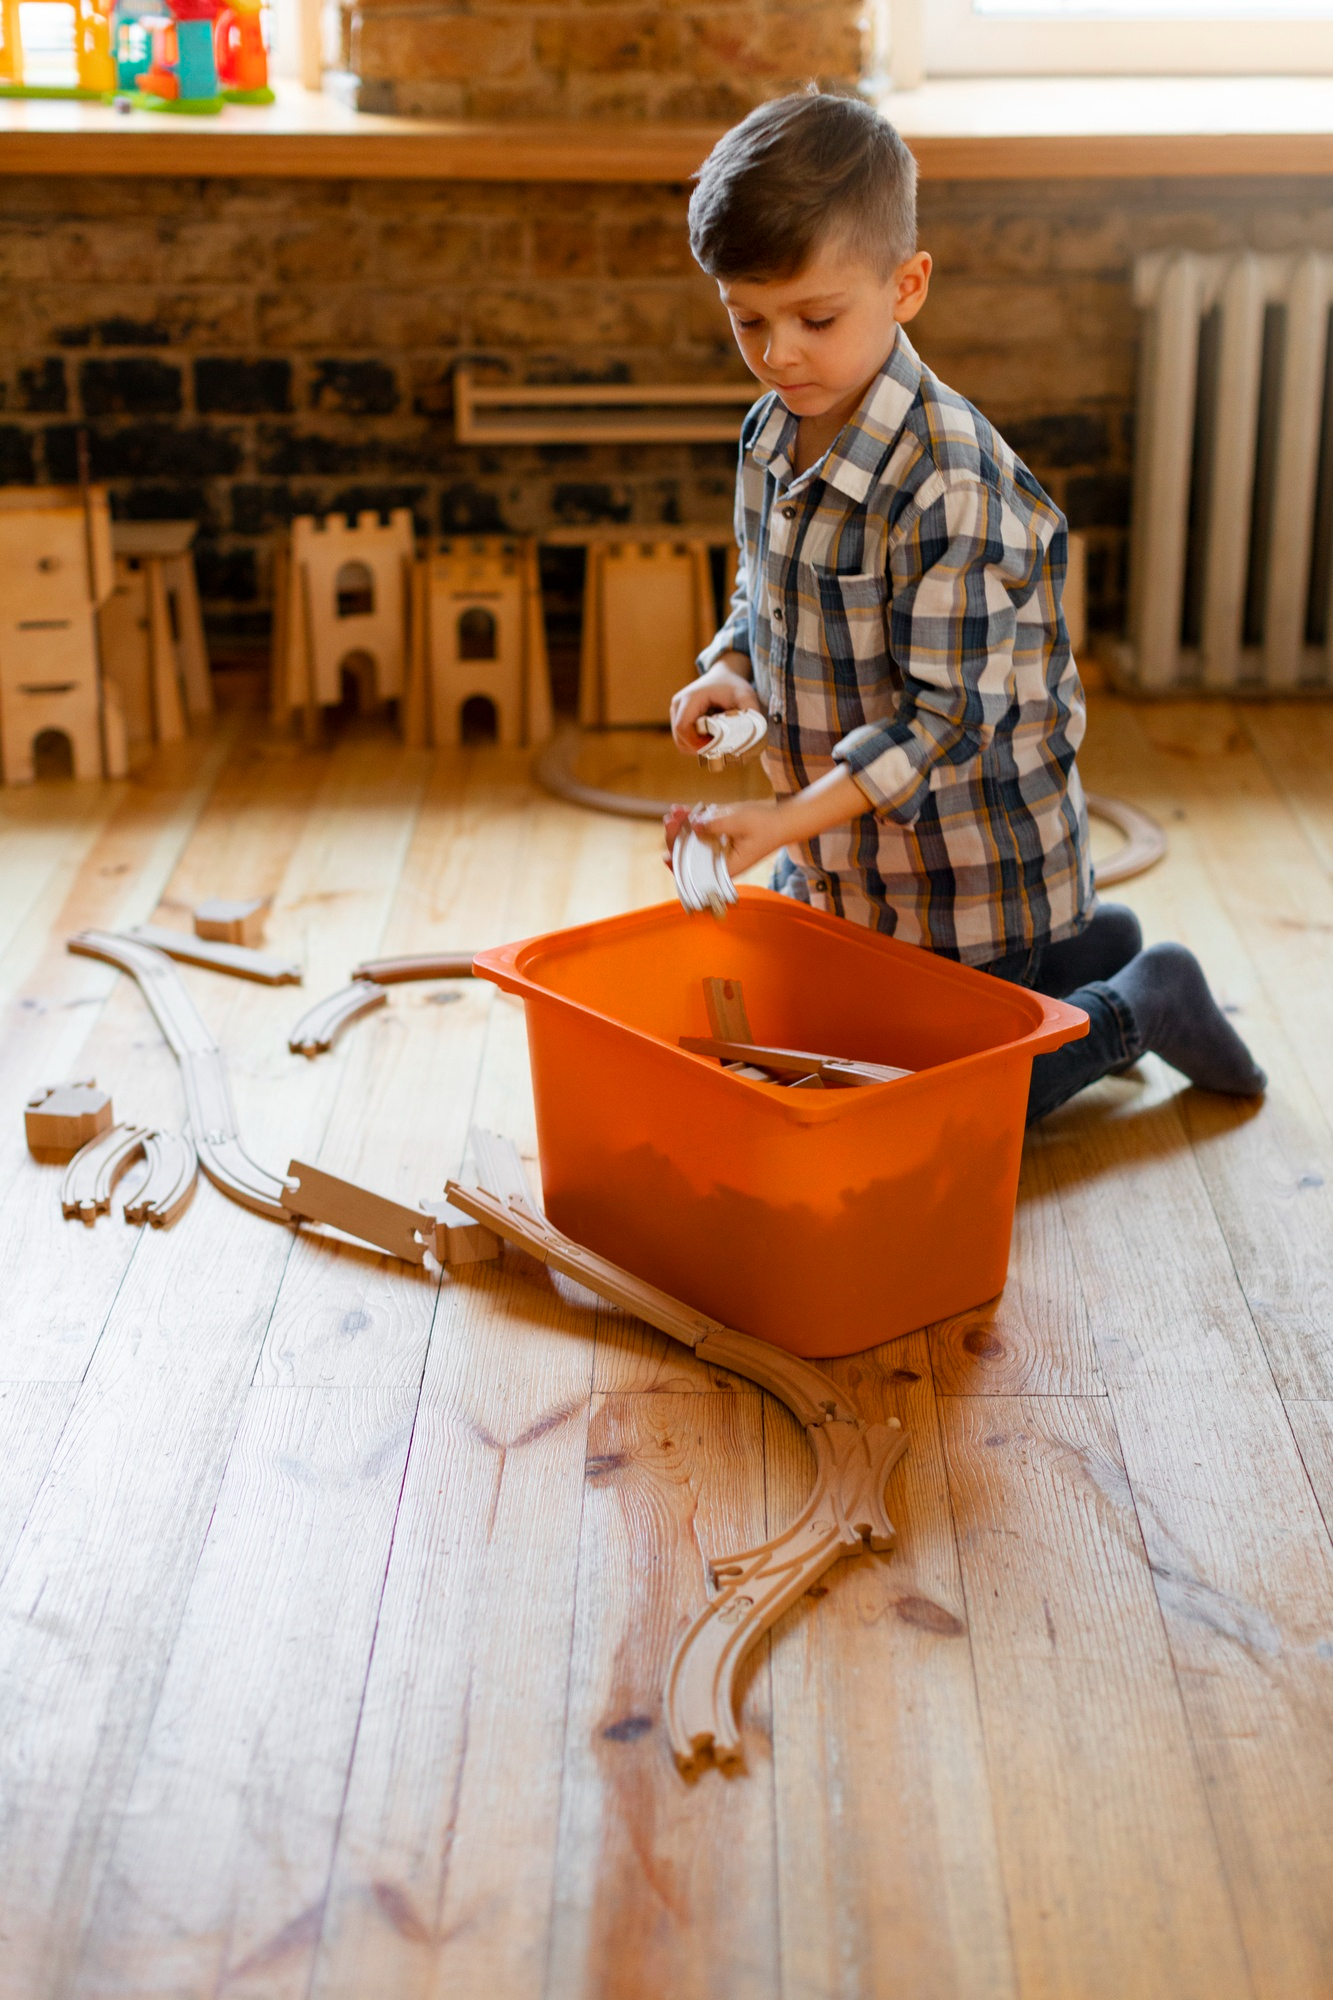 Ein kleiner Junge spielt mit Holzspielzeug | Quelle: Freepik